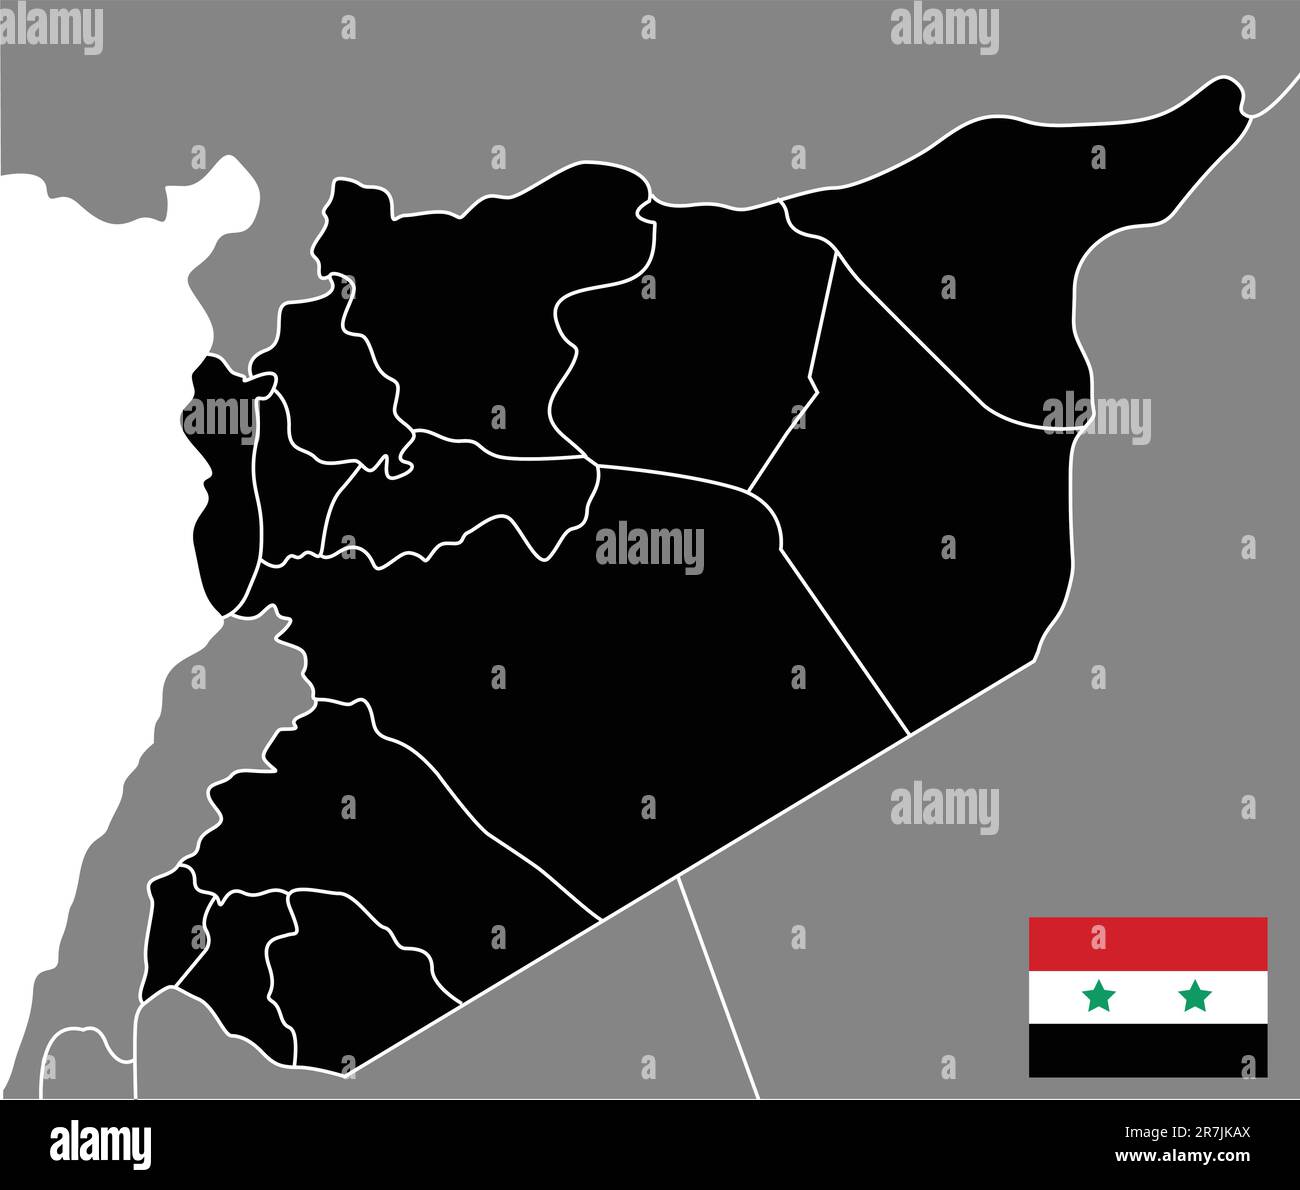 illustrazione vettoriale della mappa della siria Illustrazione Vettoriale